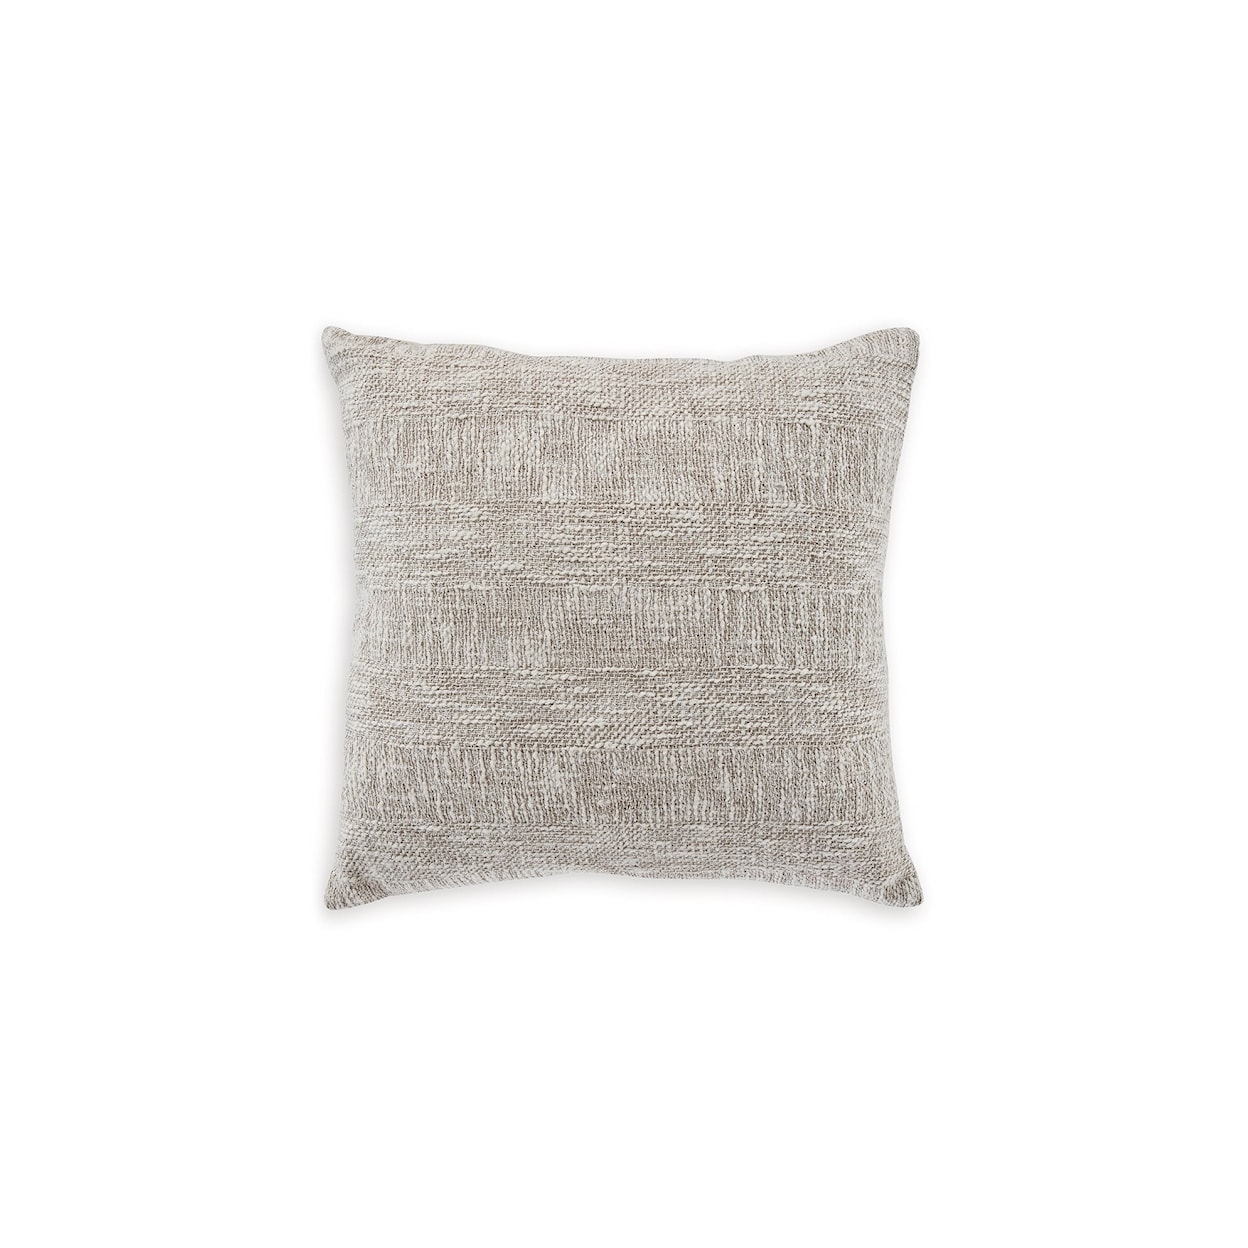 Michael Alan Select Carddon Set of Pillows